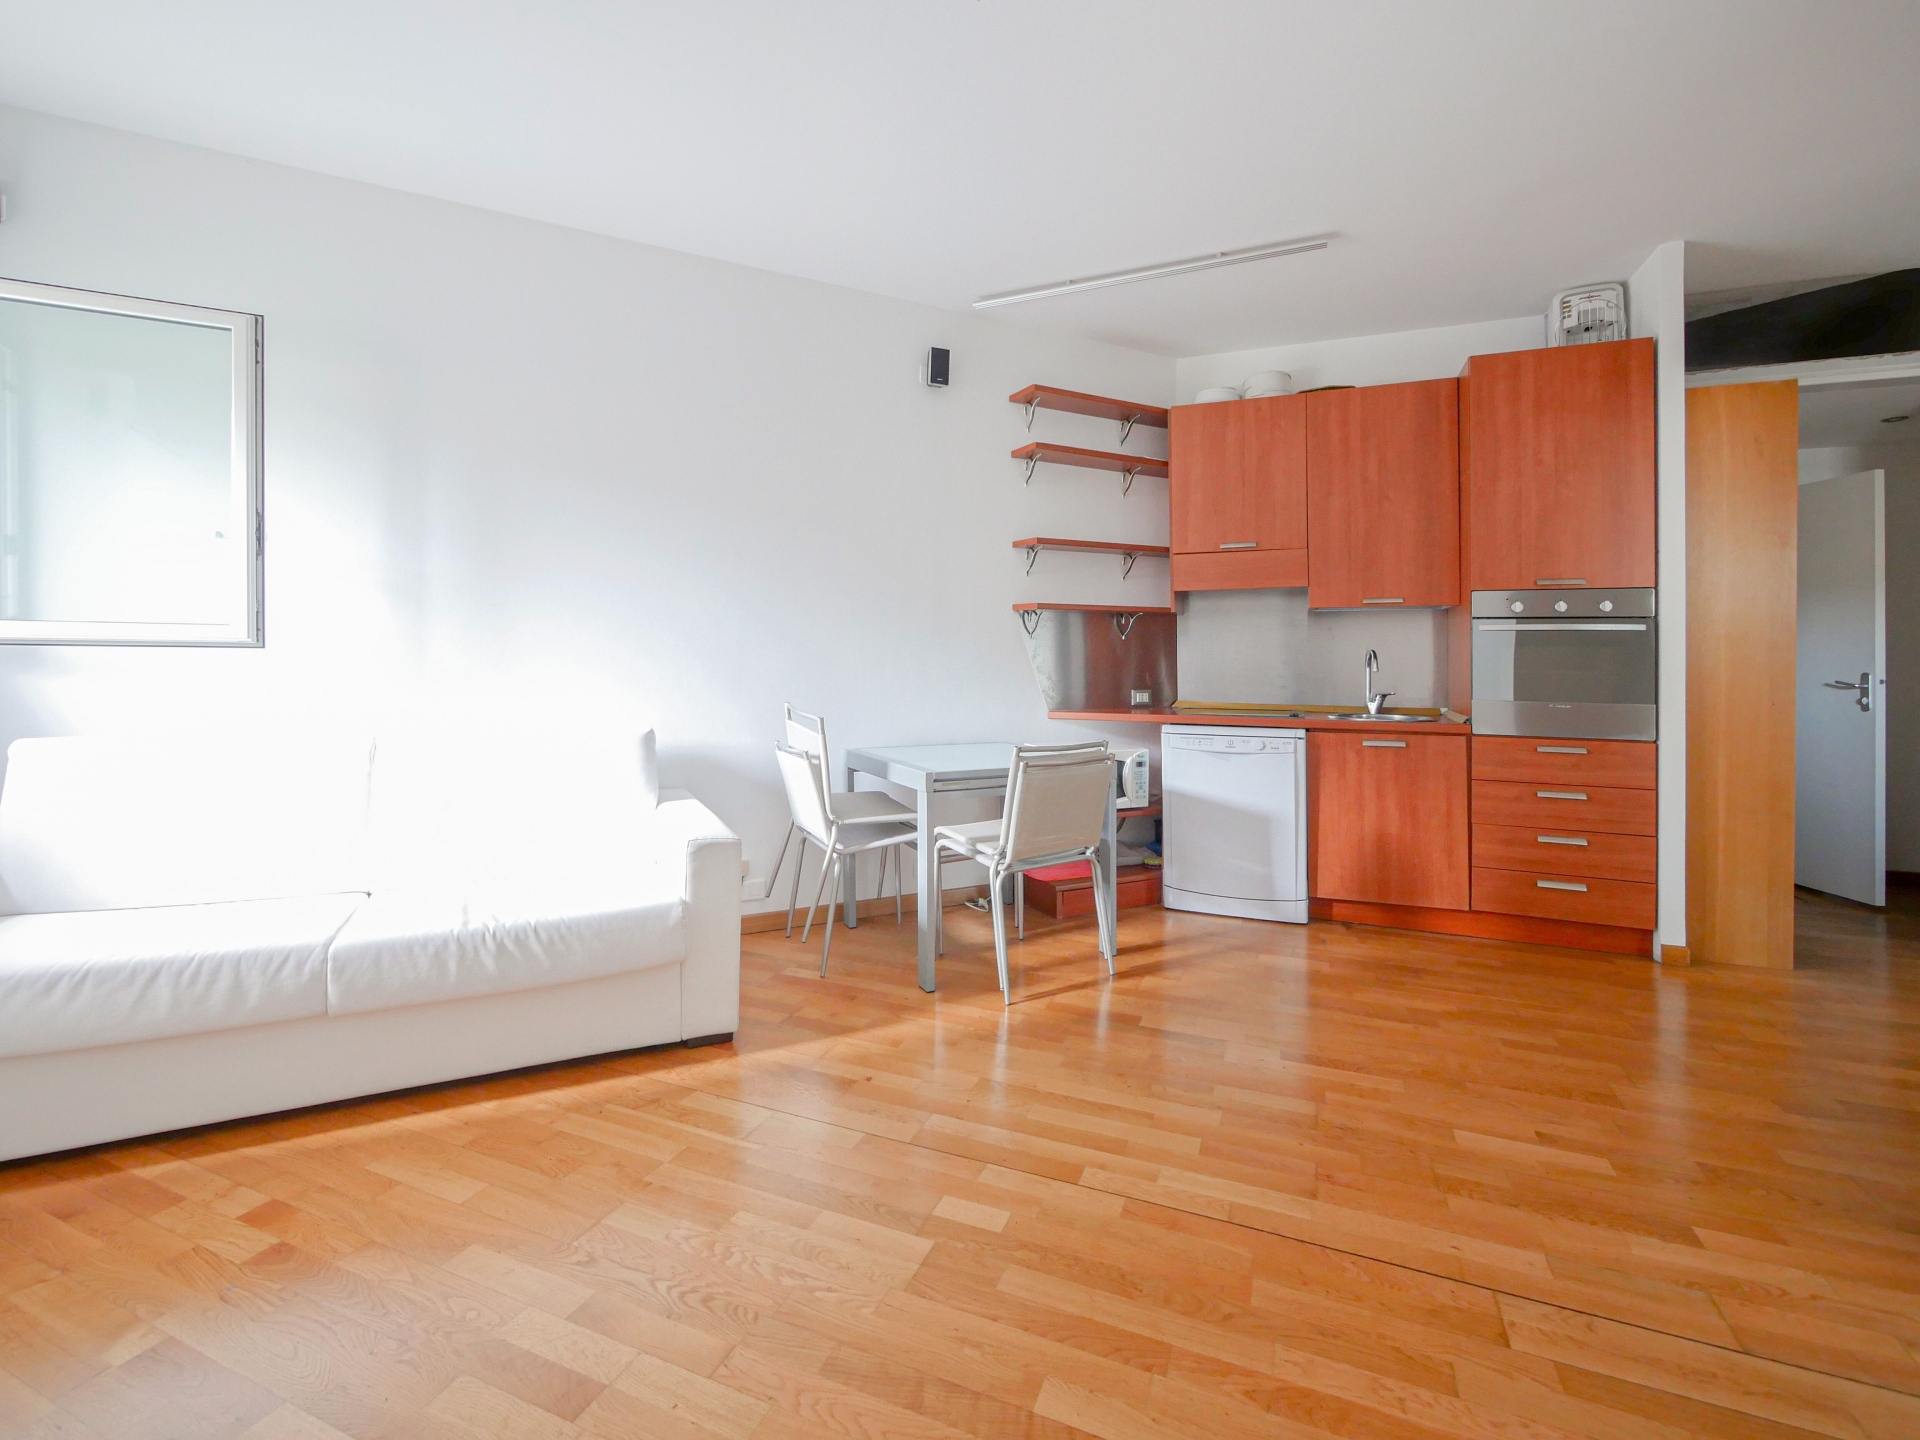 Dotta 2 rooms apartment for sale - AUTEUIL - La Rousse - Monaco - img82973